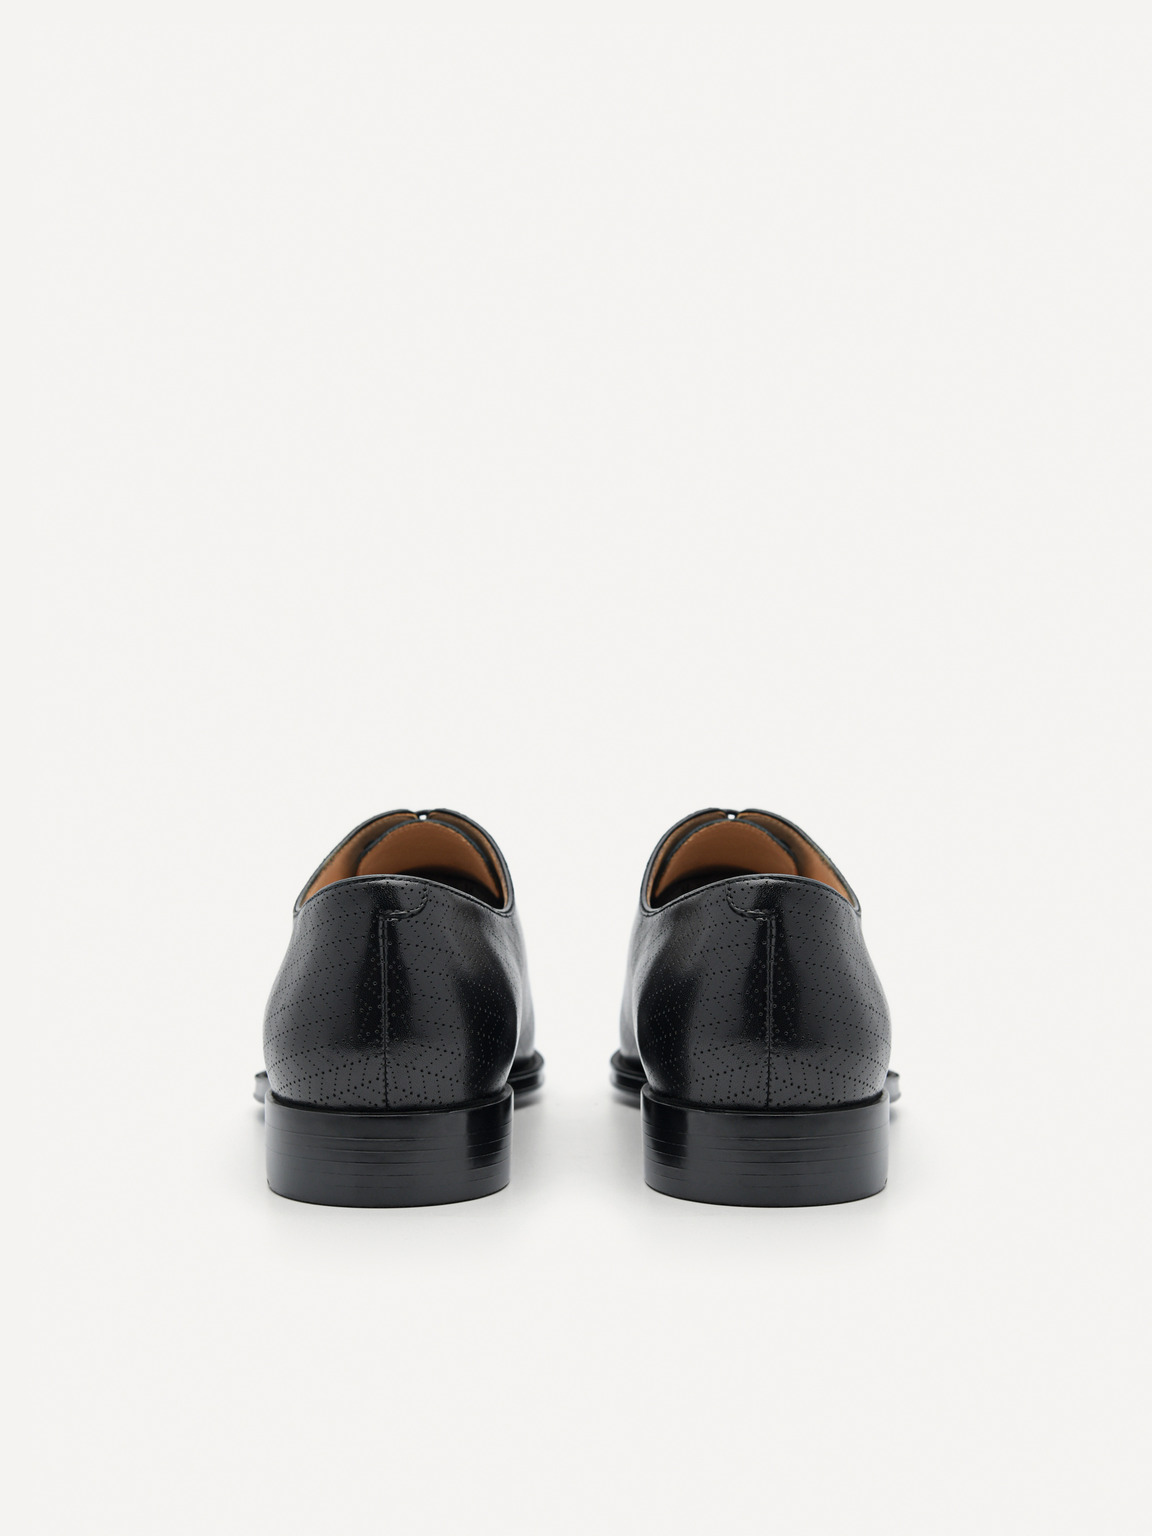 壓紋皮革牛津鞋, 黑色